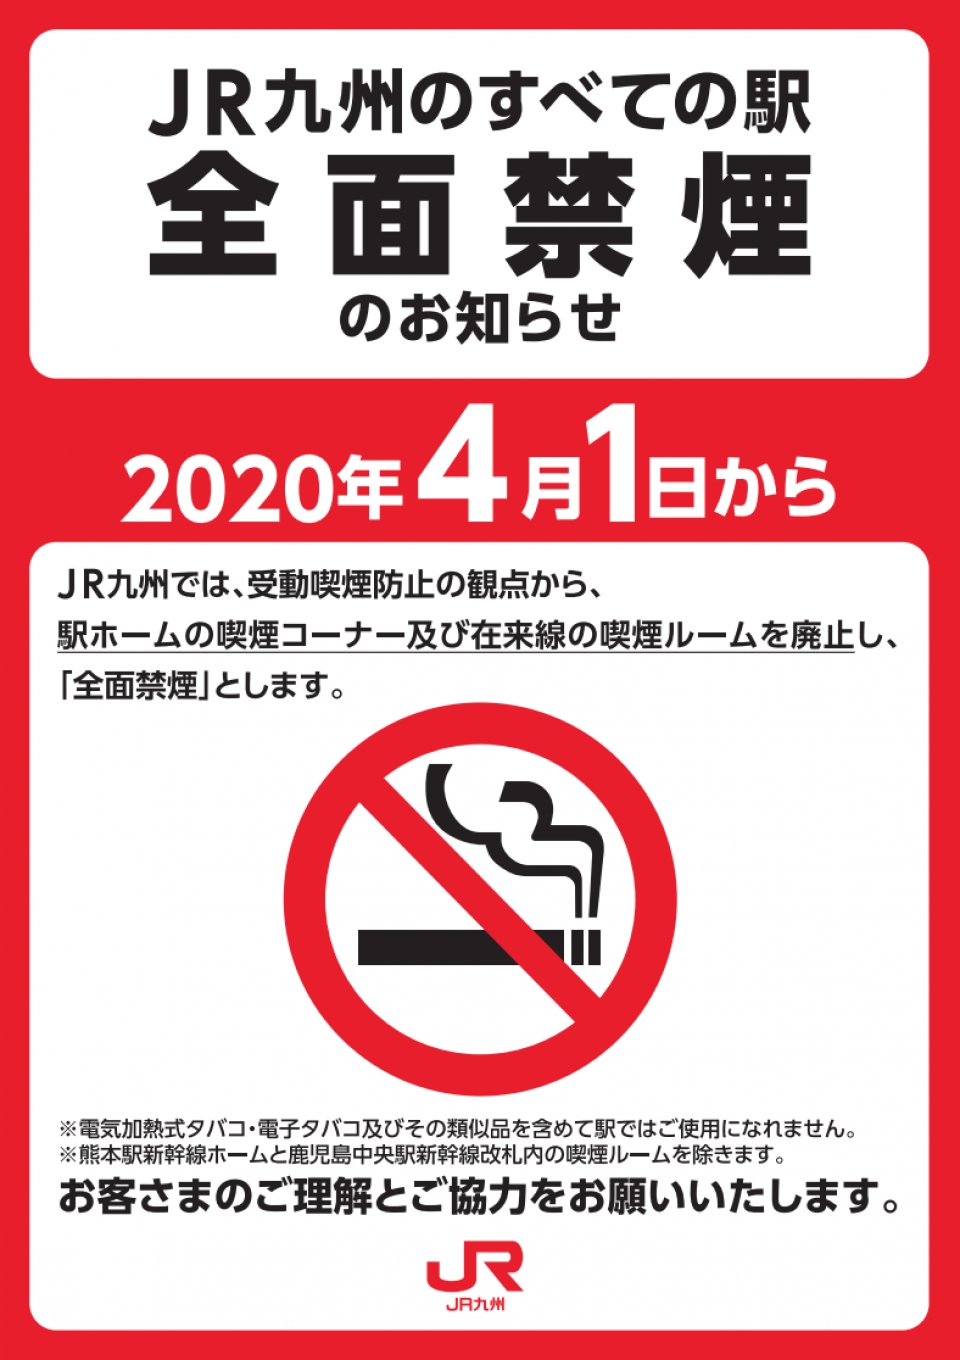 Jr九州 4月から駅を全面禁煙 受動喫煙防止を徹底 Raillab ニュース レイルラボ